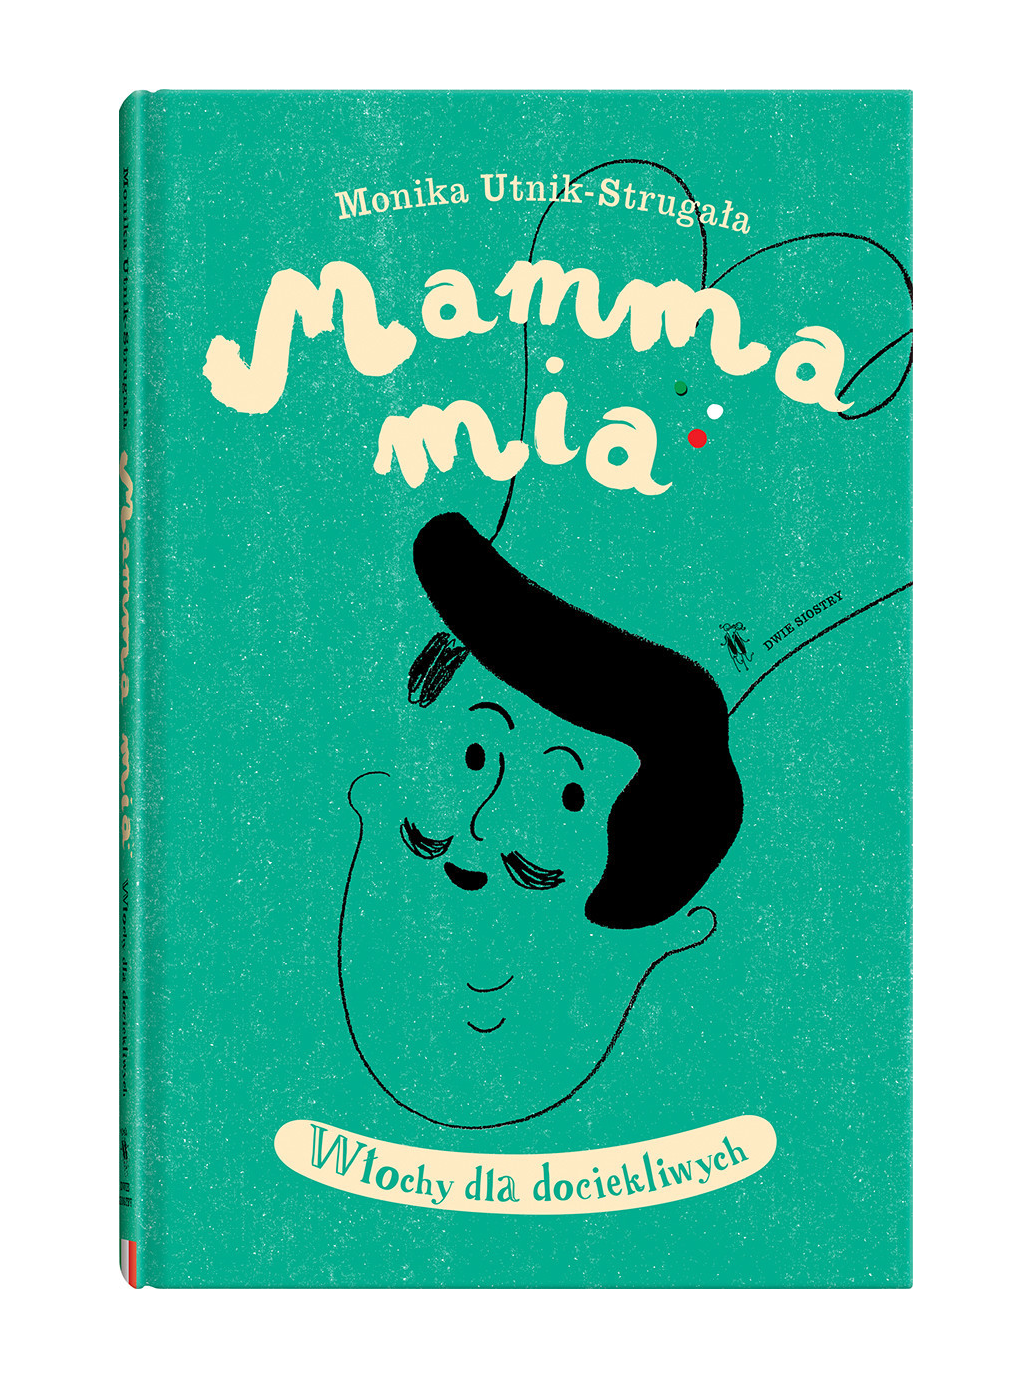 Mamma mia. Italy for the inquisitive